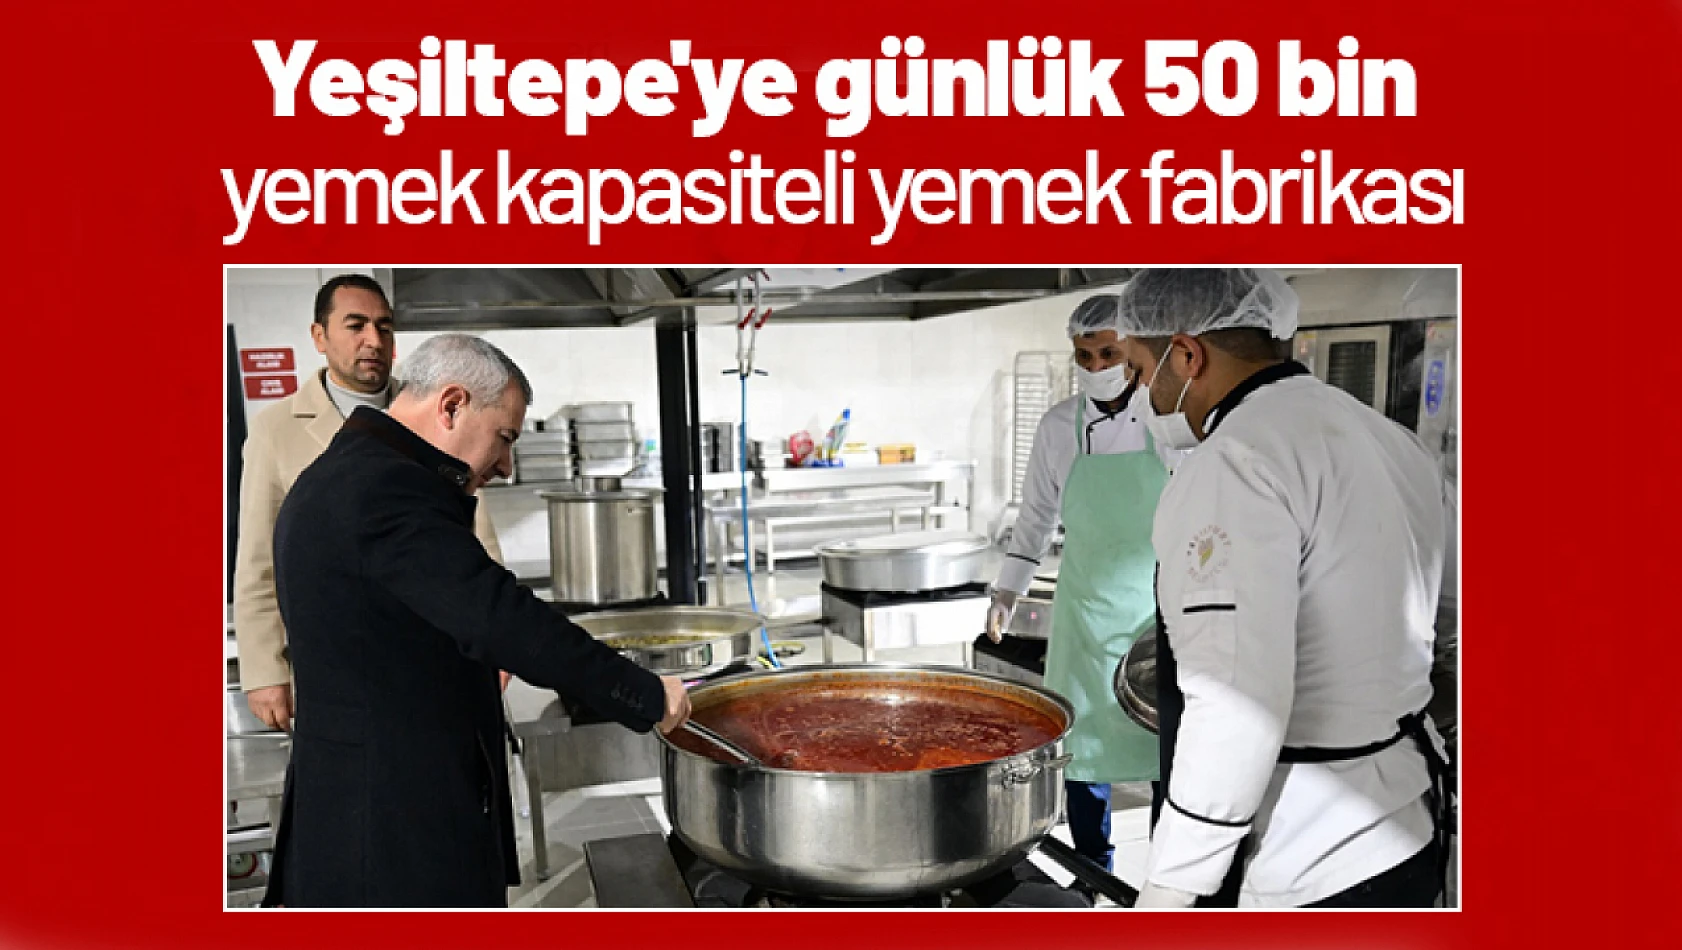 Yeşiltepe'ye günlük 50 bin yemek kapasiteli yemek fabrikası...